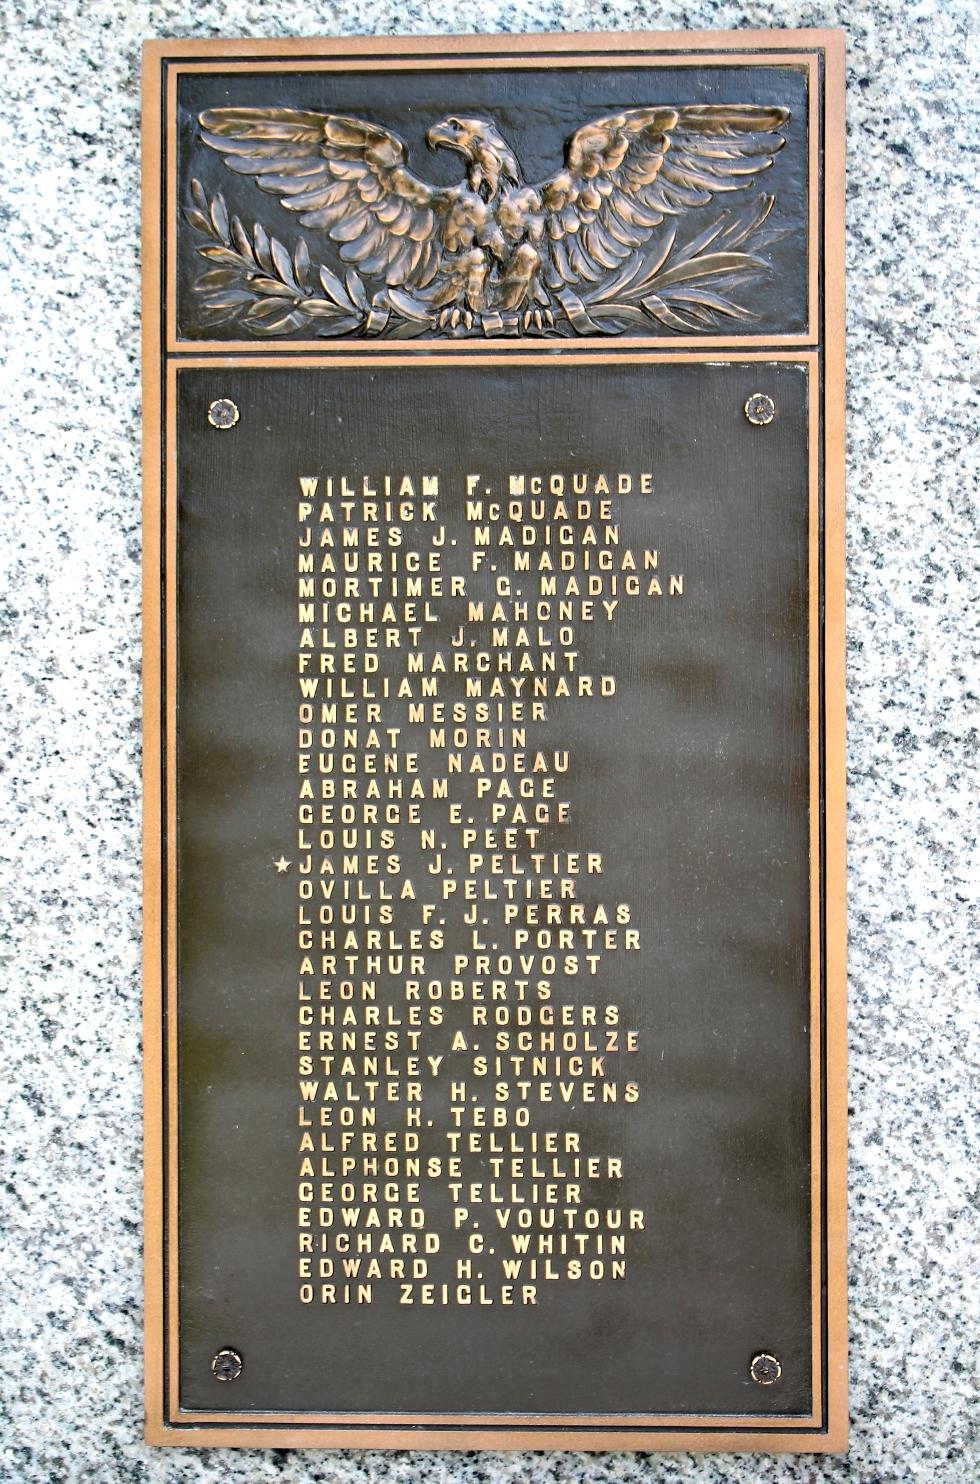 Rockdale Massachusetts World War I Veterans Memorial